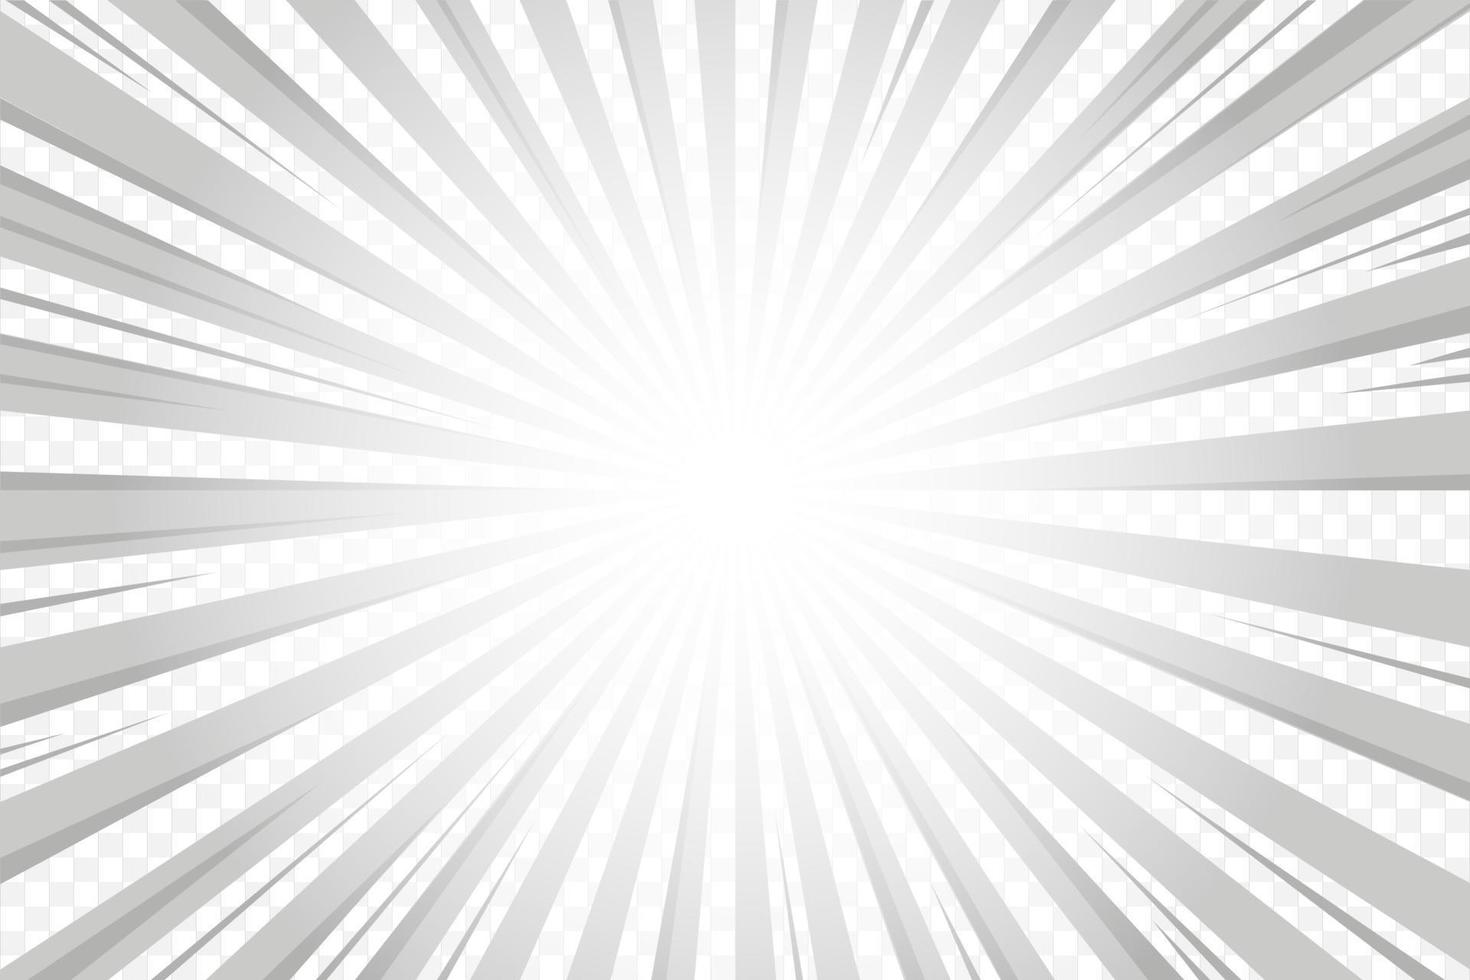 fond de rayons de soleil. motif comique abstrait radial blanc et gris. toile de fond des lignes abstraites d'explosion de vecteur